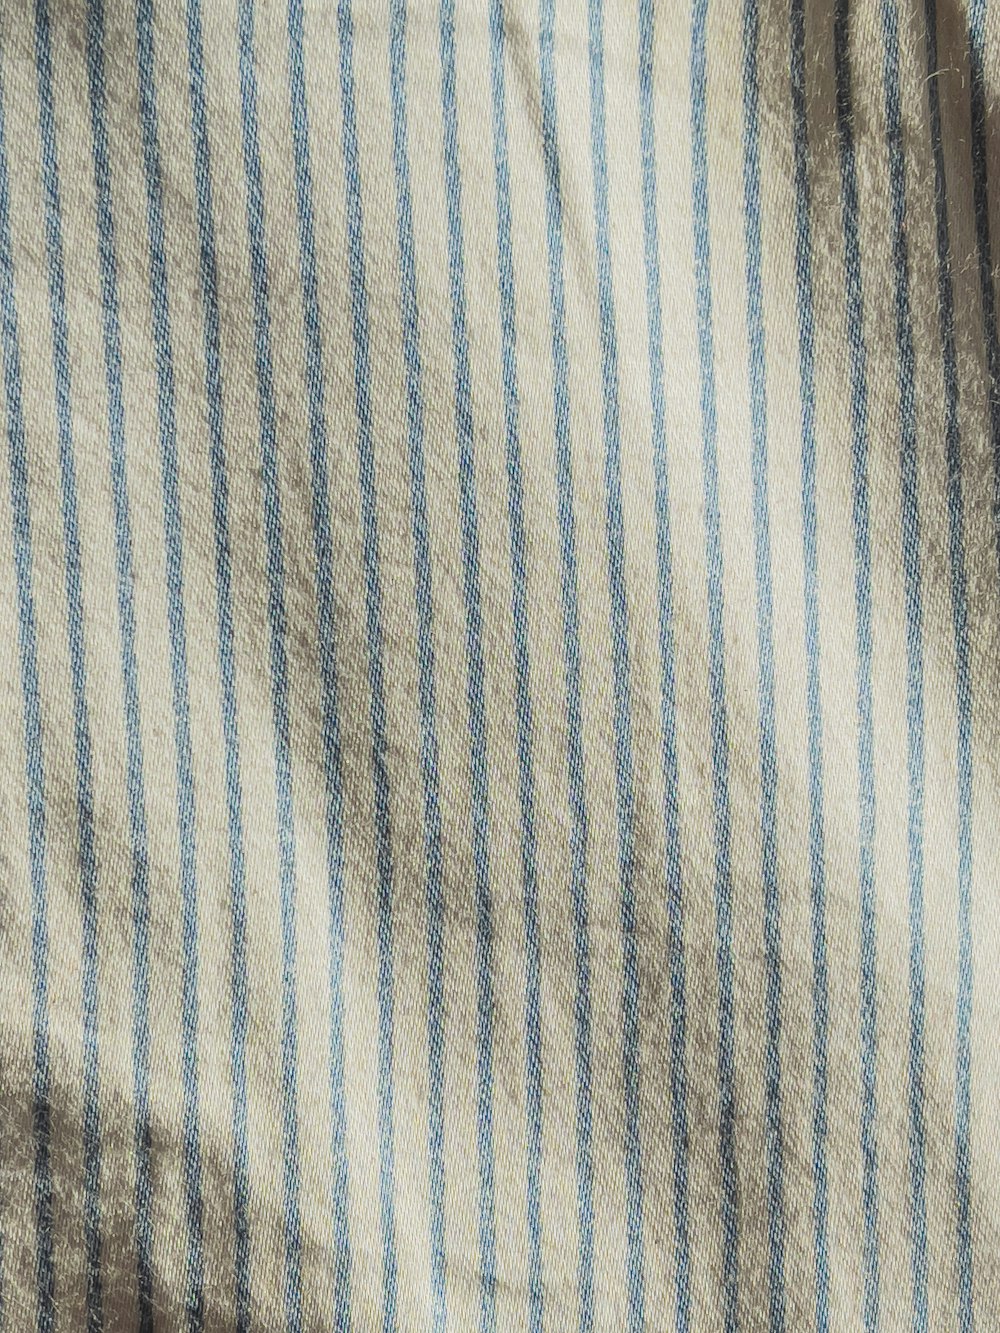 Textil a rayas blancas y azules